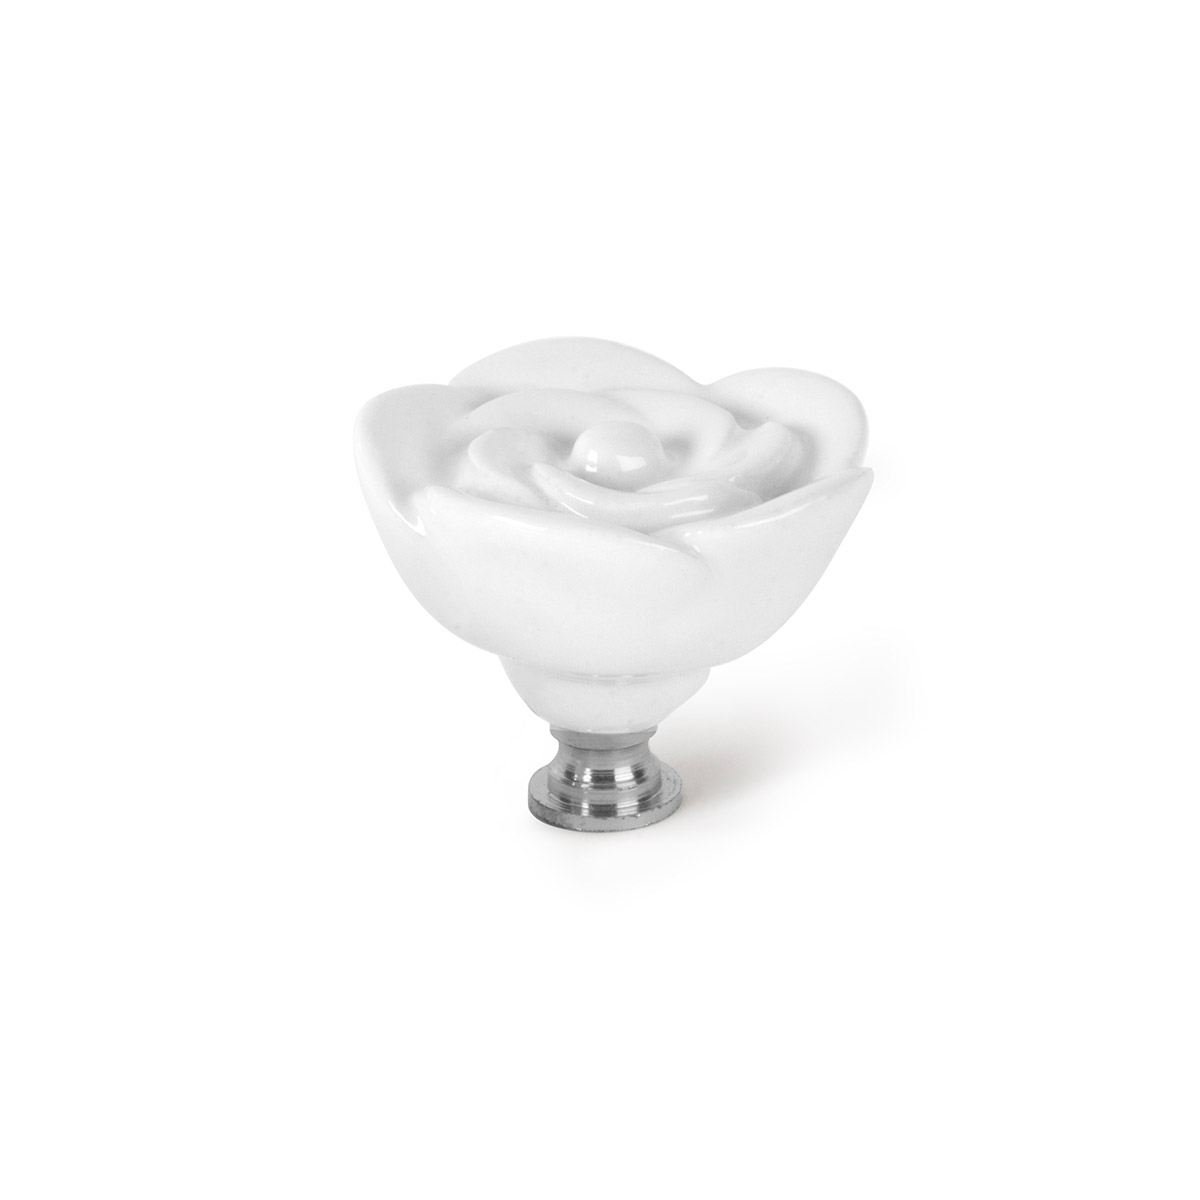 Bouton en porcelaine blanche, dimensions: 48x48x40mm Ø: 48mm